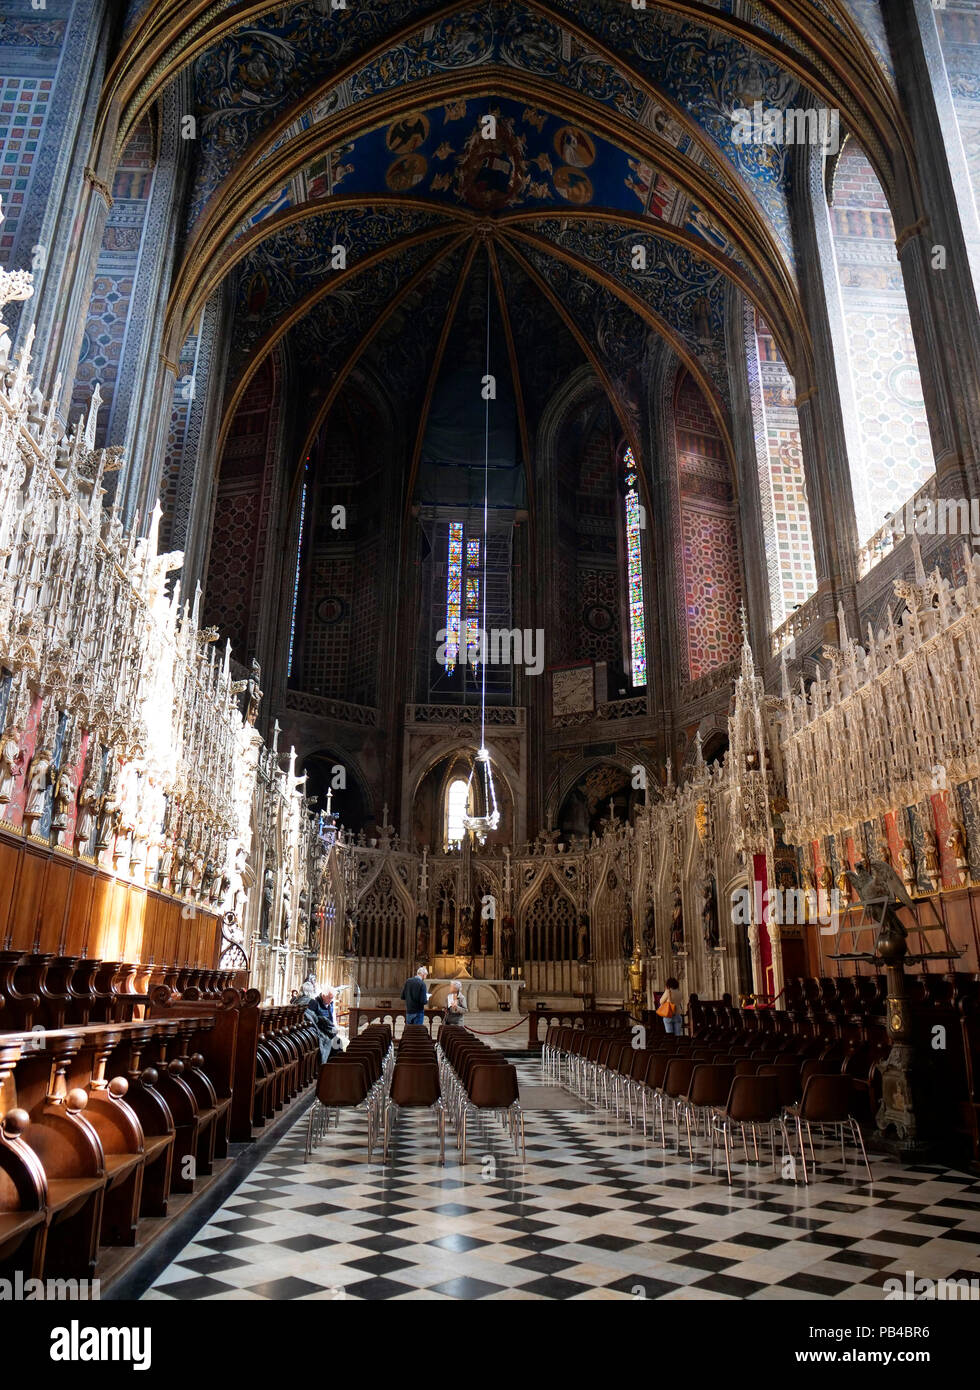 La navata principale e interno della Cattedrale cattolica romana Basilica di Santa Cecilia, o Albi cattedrale in Albi, Francia Foto Stock